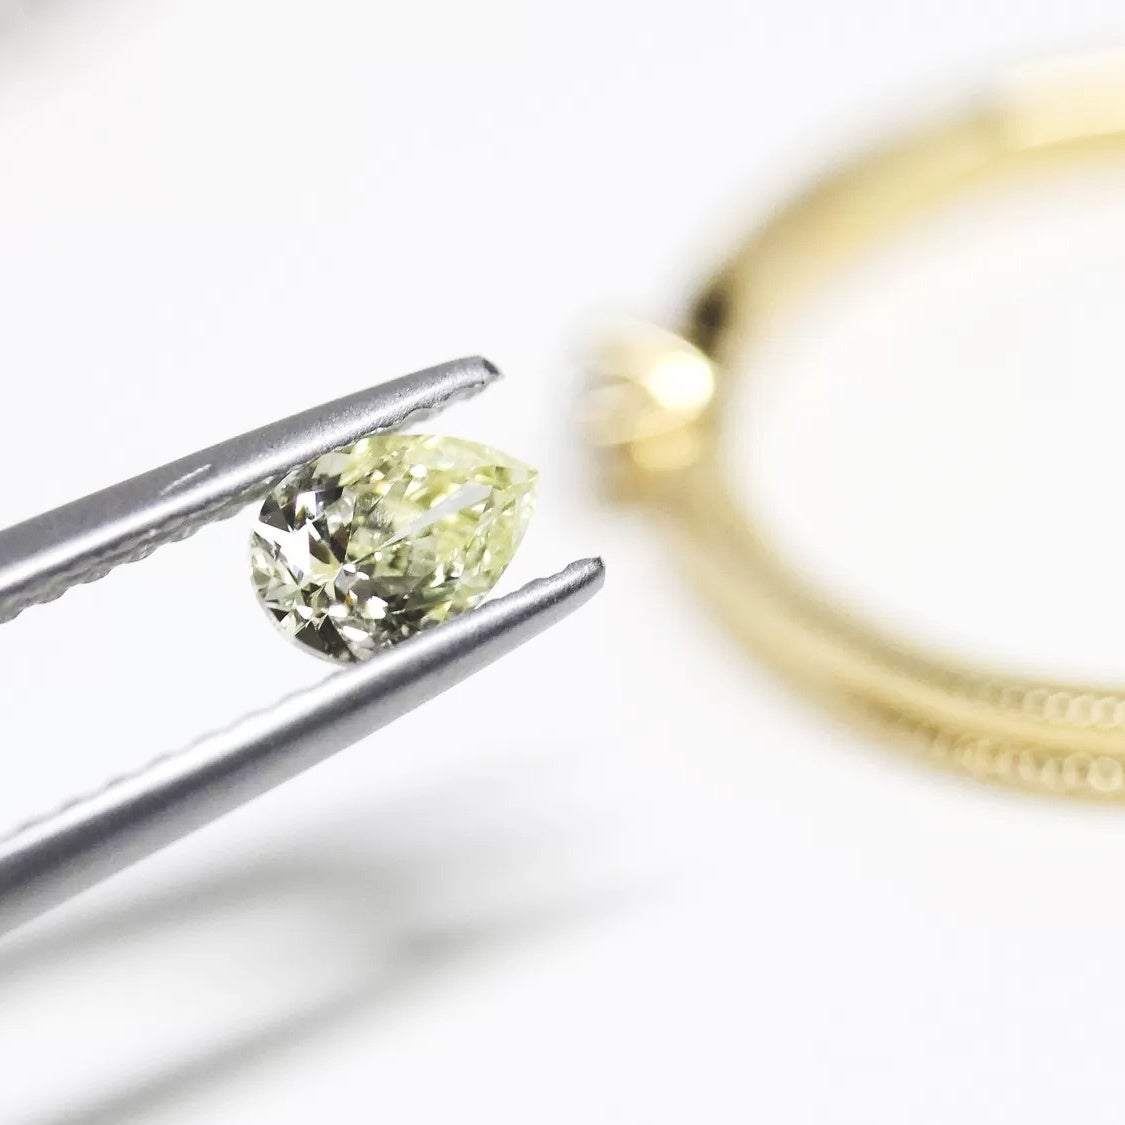 オーダーメイドジュエリー“ith”、夏を彩る婚約指輪を提案する 「ith Summer Diamond Fair 2024」を開催